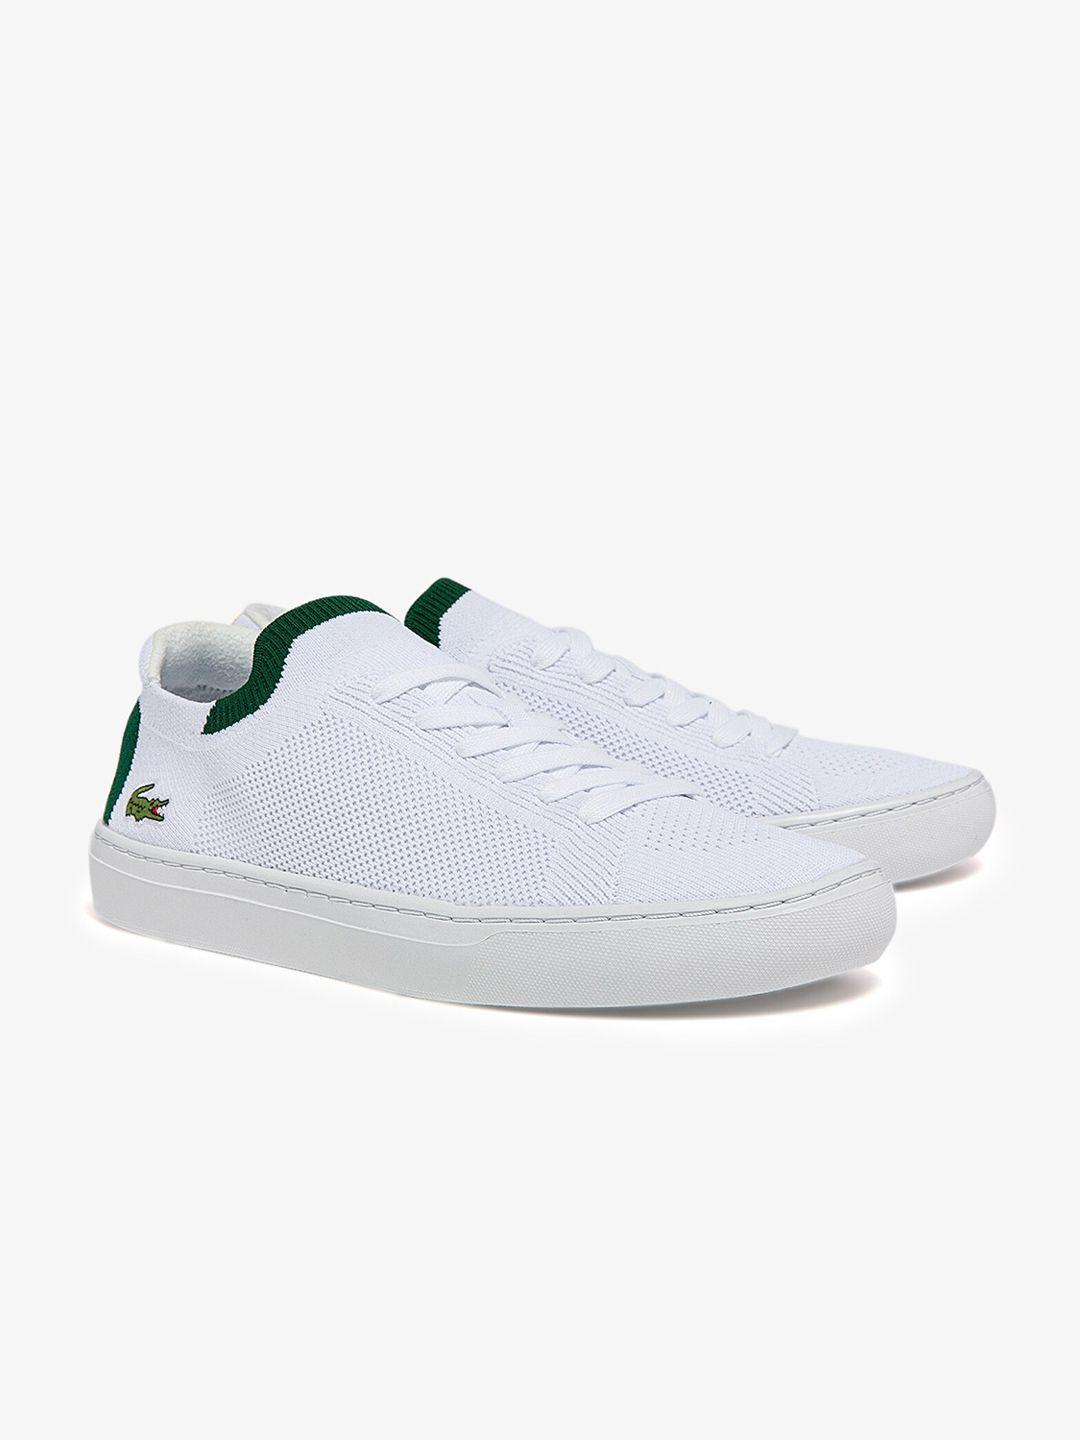 lacoste-men-white-woven-design-sneakers